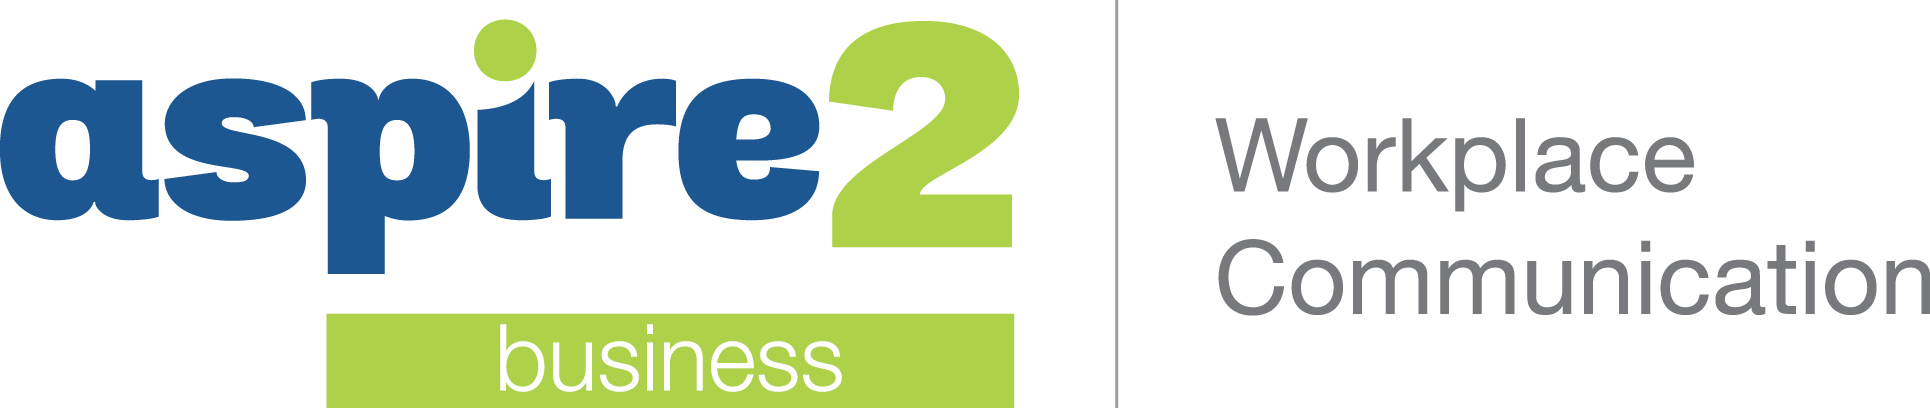 Aspire2 Business Logo